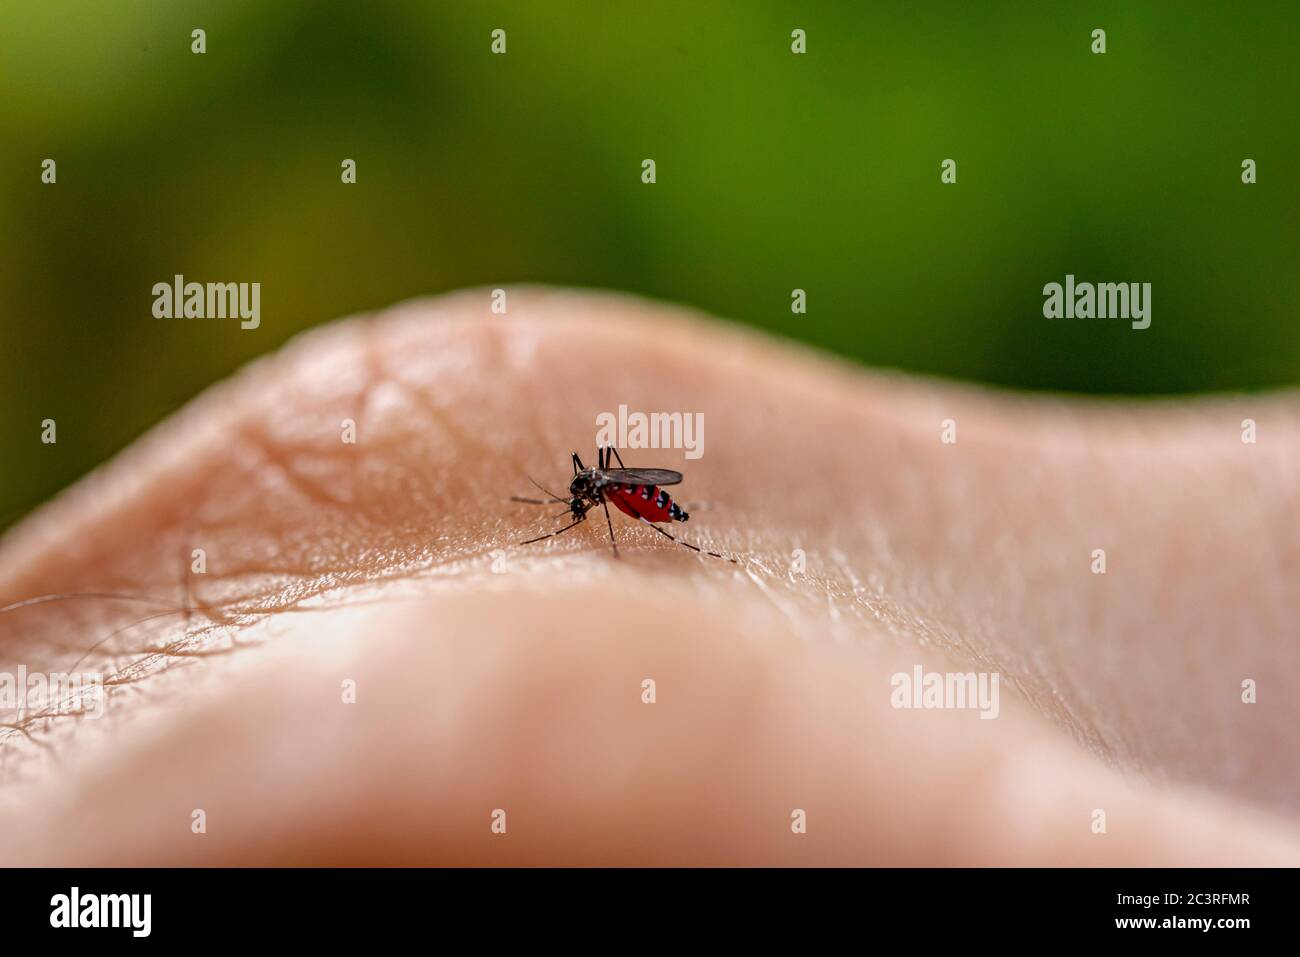 Aedes aegypti zanzara che mordica la pelle umana. Trasmettitore di varie malattie come dengue, zika e chikungunya febbre. Foto Stock